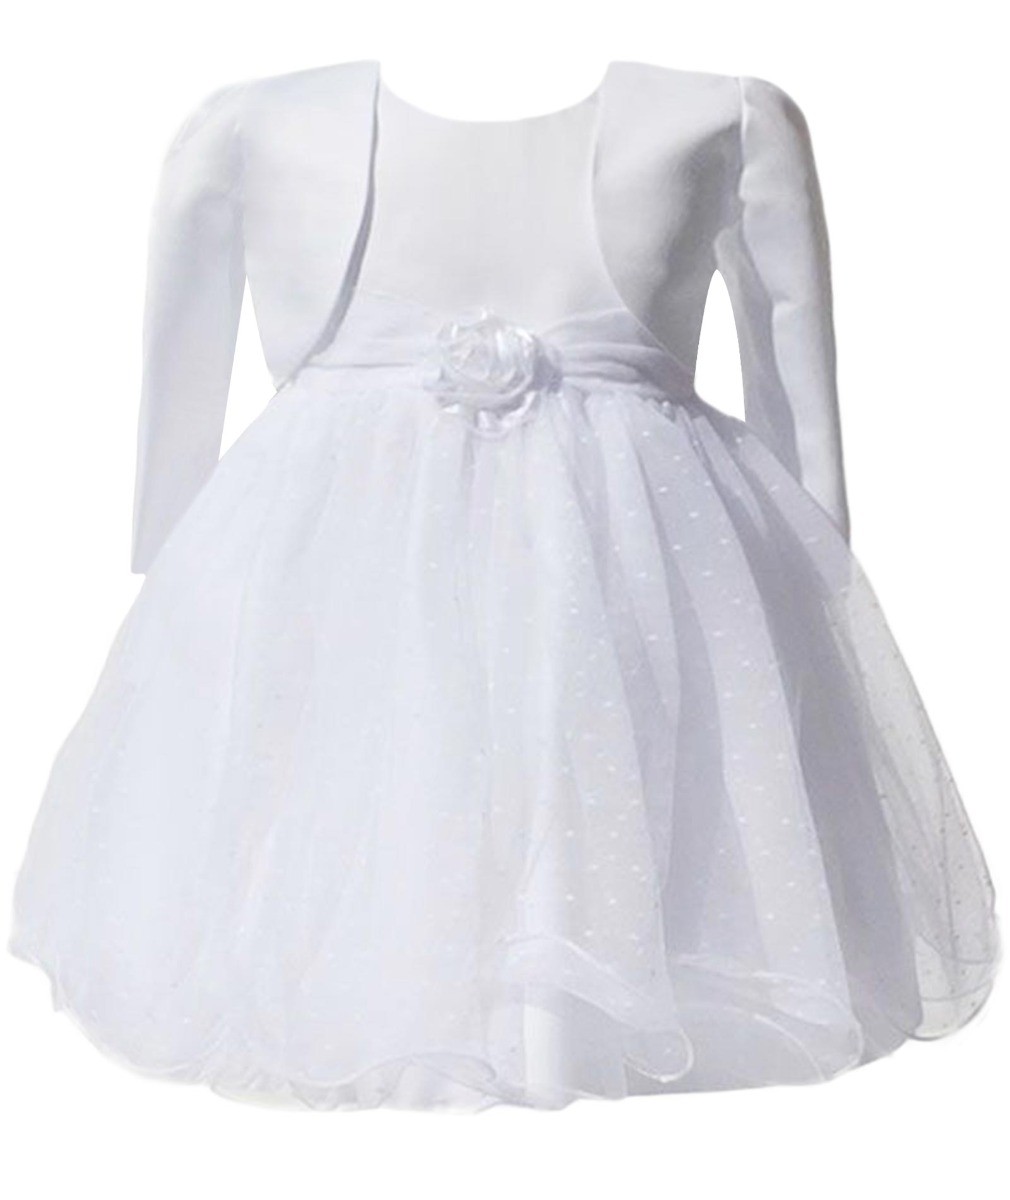 Baby Mädchen Kleid mit Bolero Jacke - Weiß